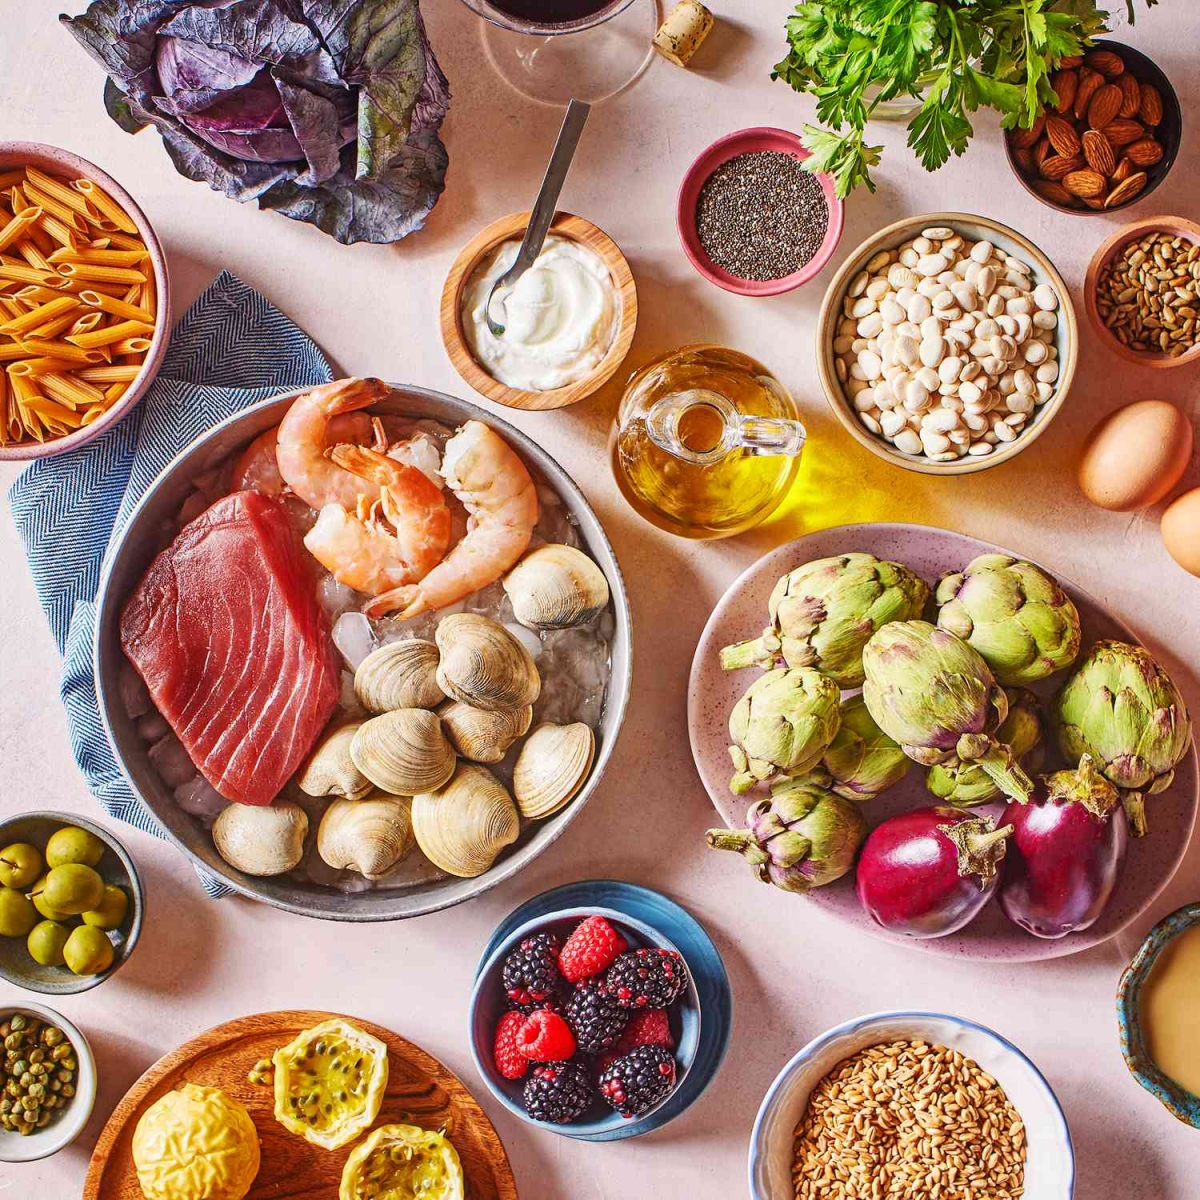 7 Amazing Health Benefits of the Mediterranean Diet